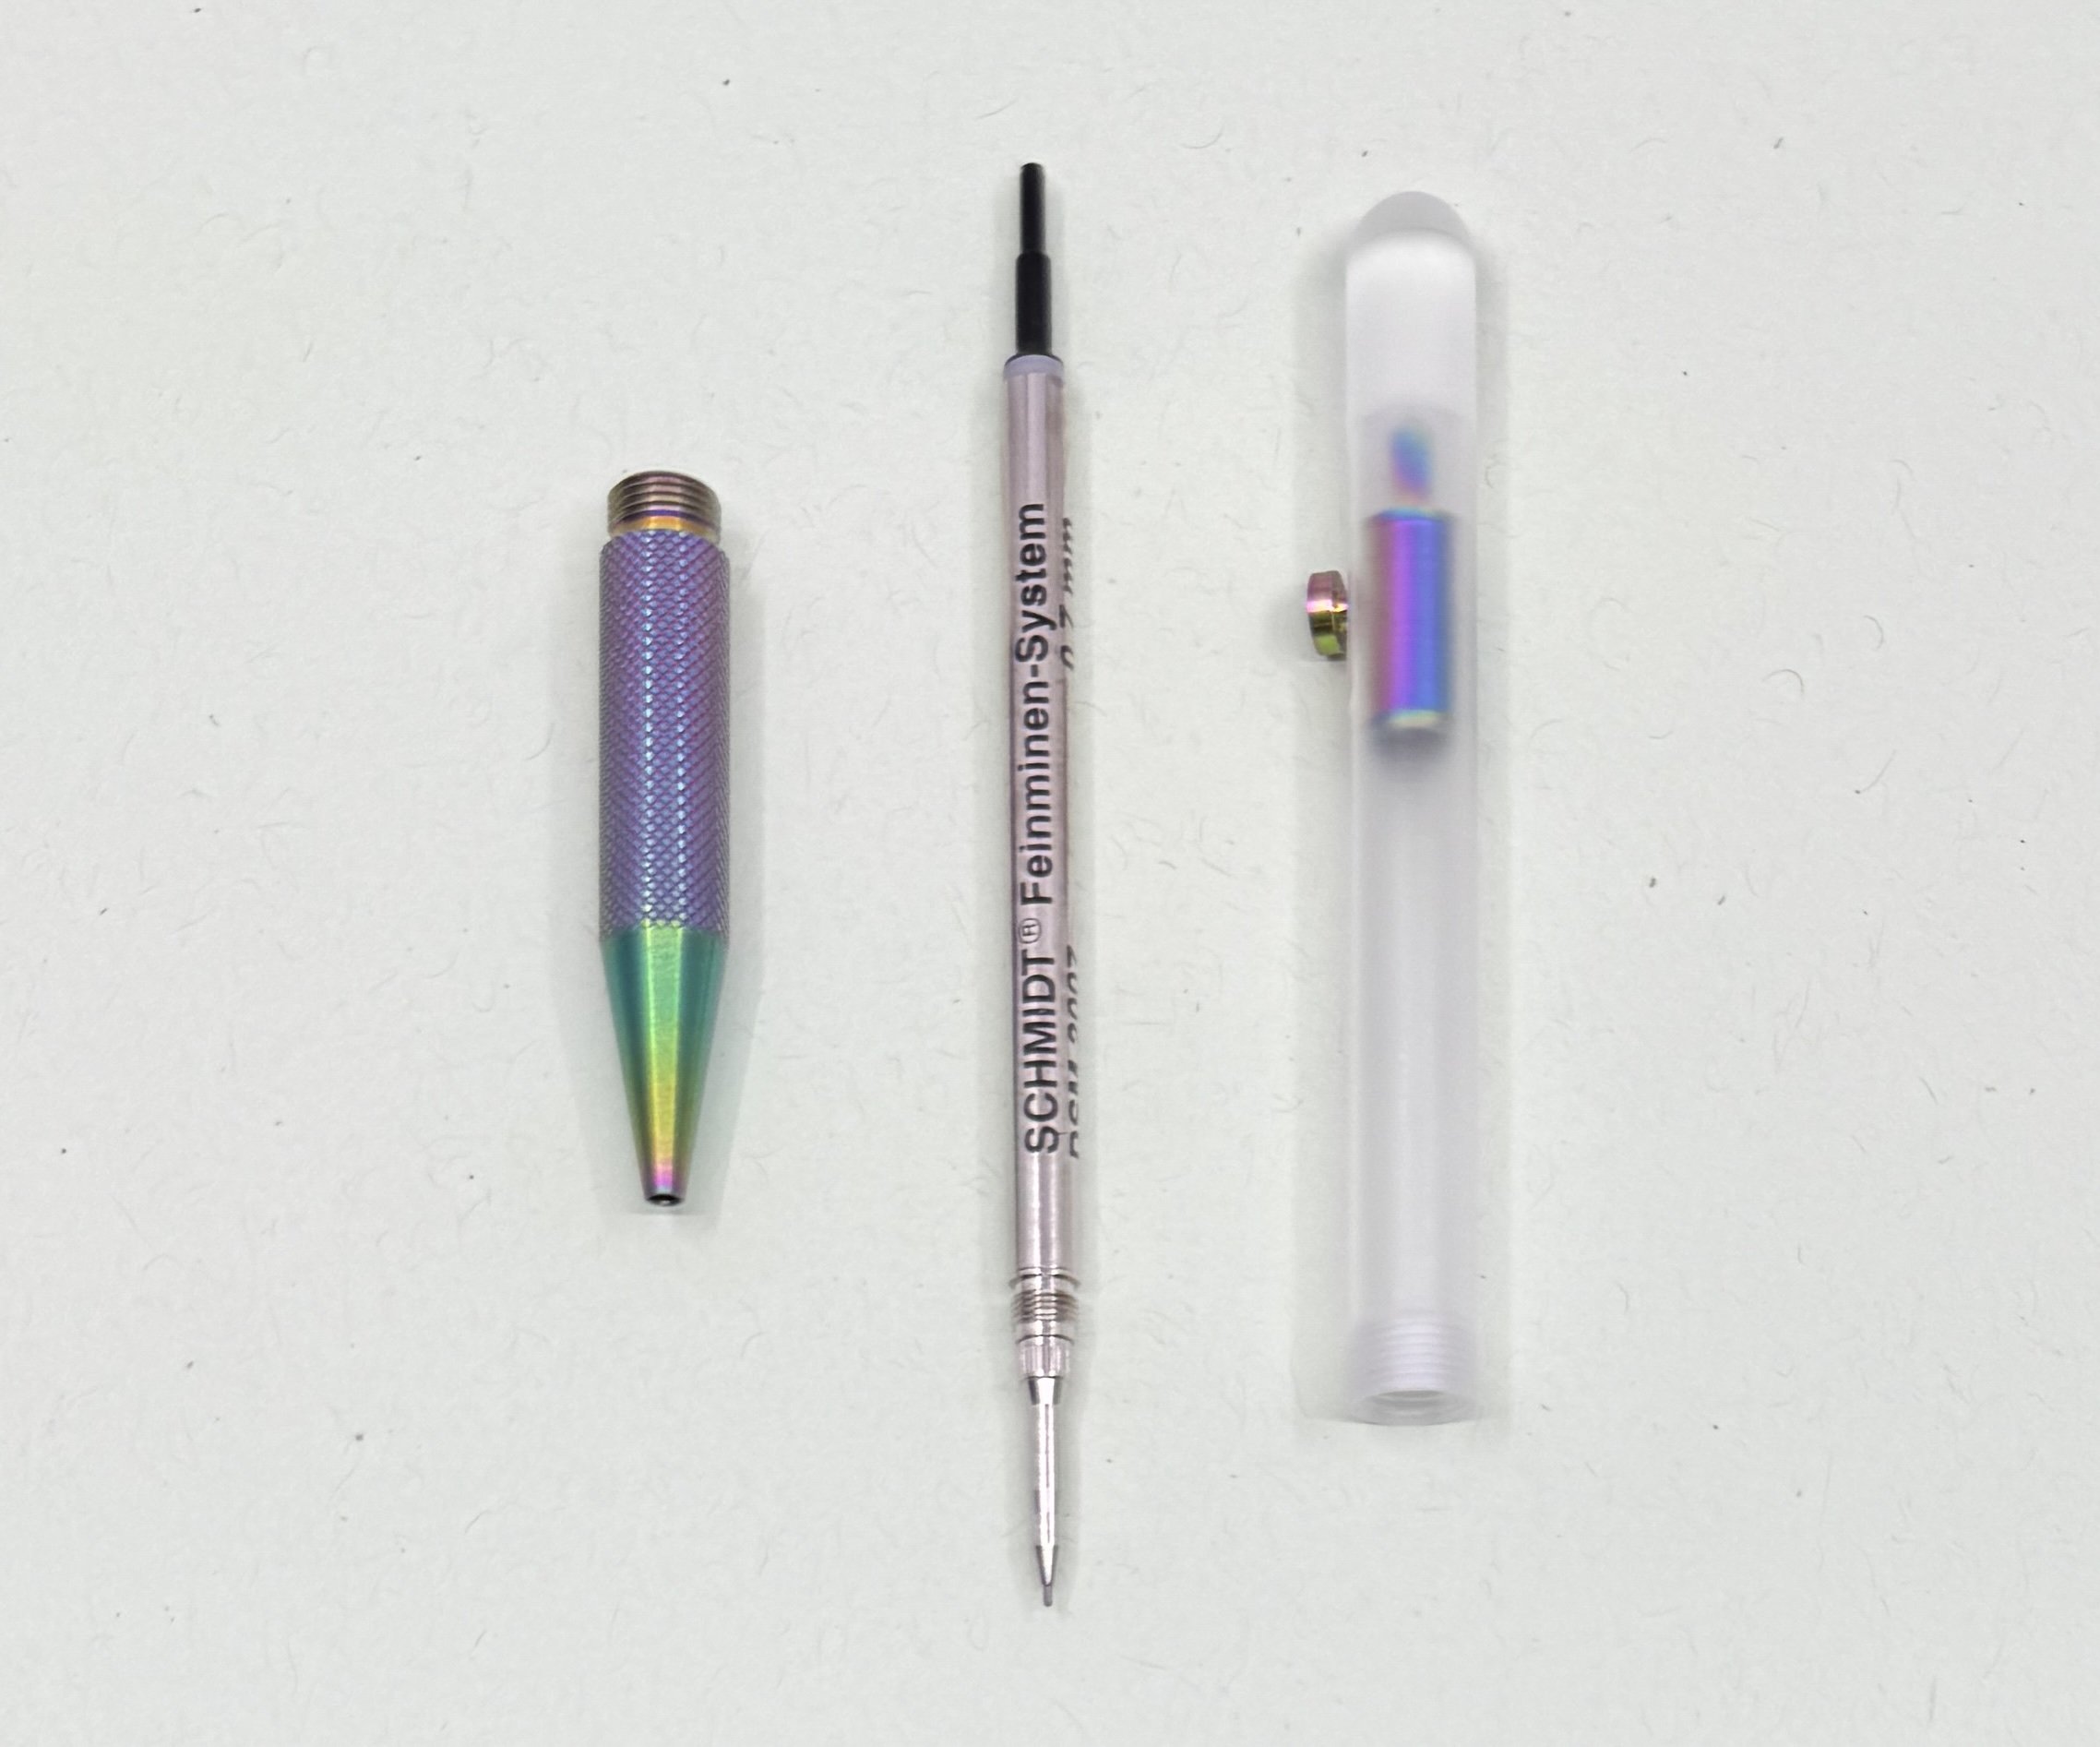 TUL Retractable Gel Pens, Mixed Metals, Medium Point, 0.7 mm, Black Barrel,  Black Ink, Pack Of 4 Pens